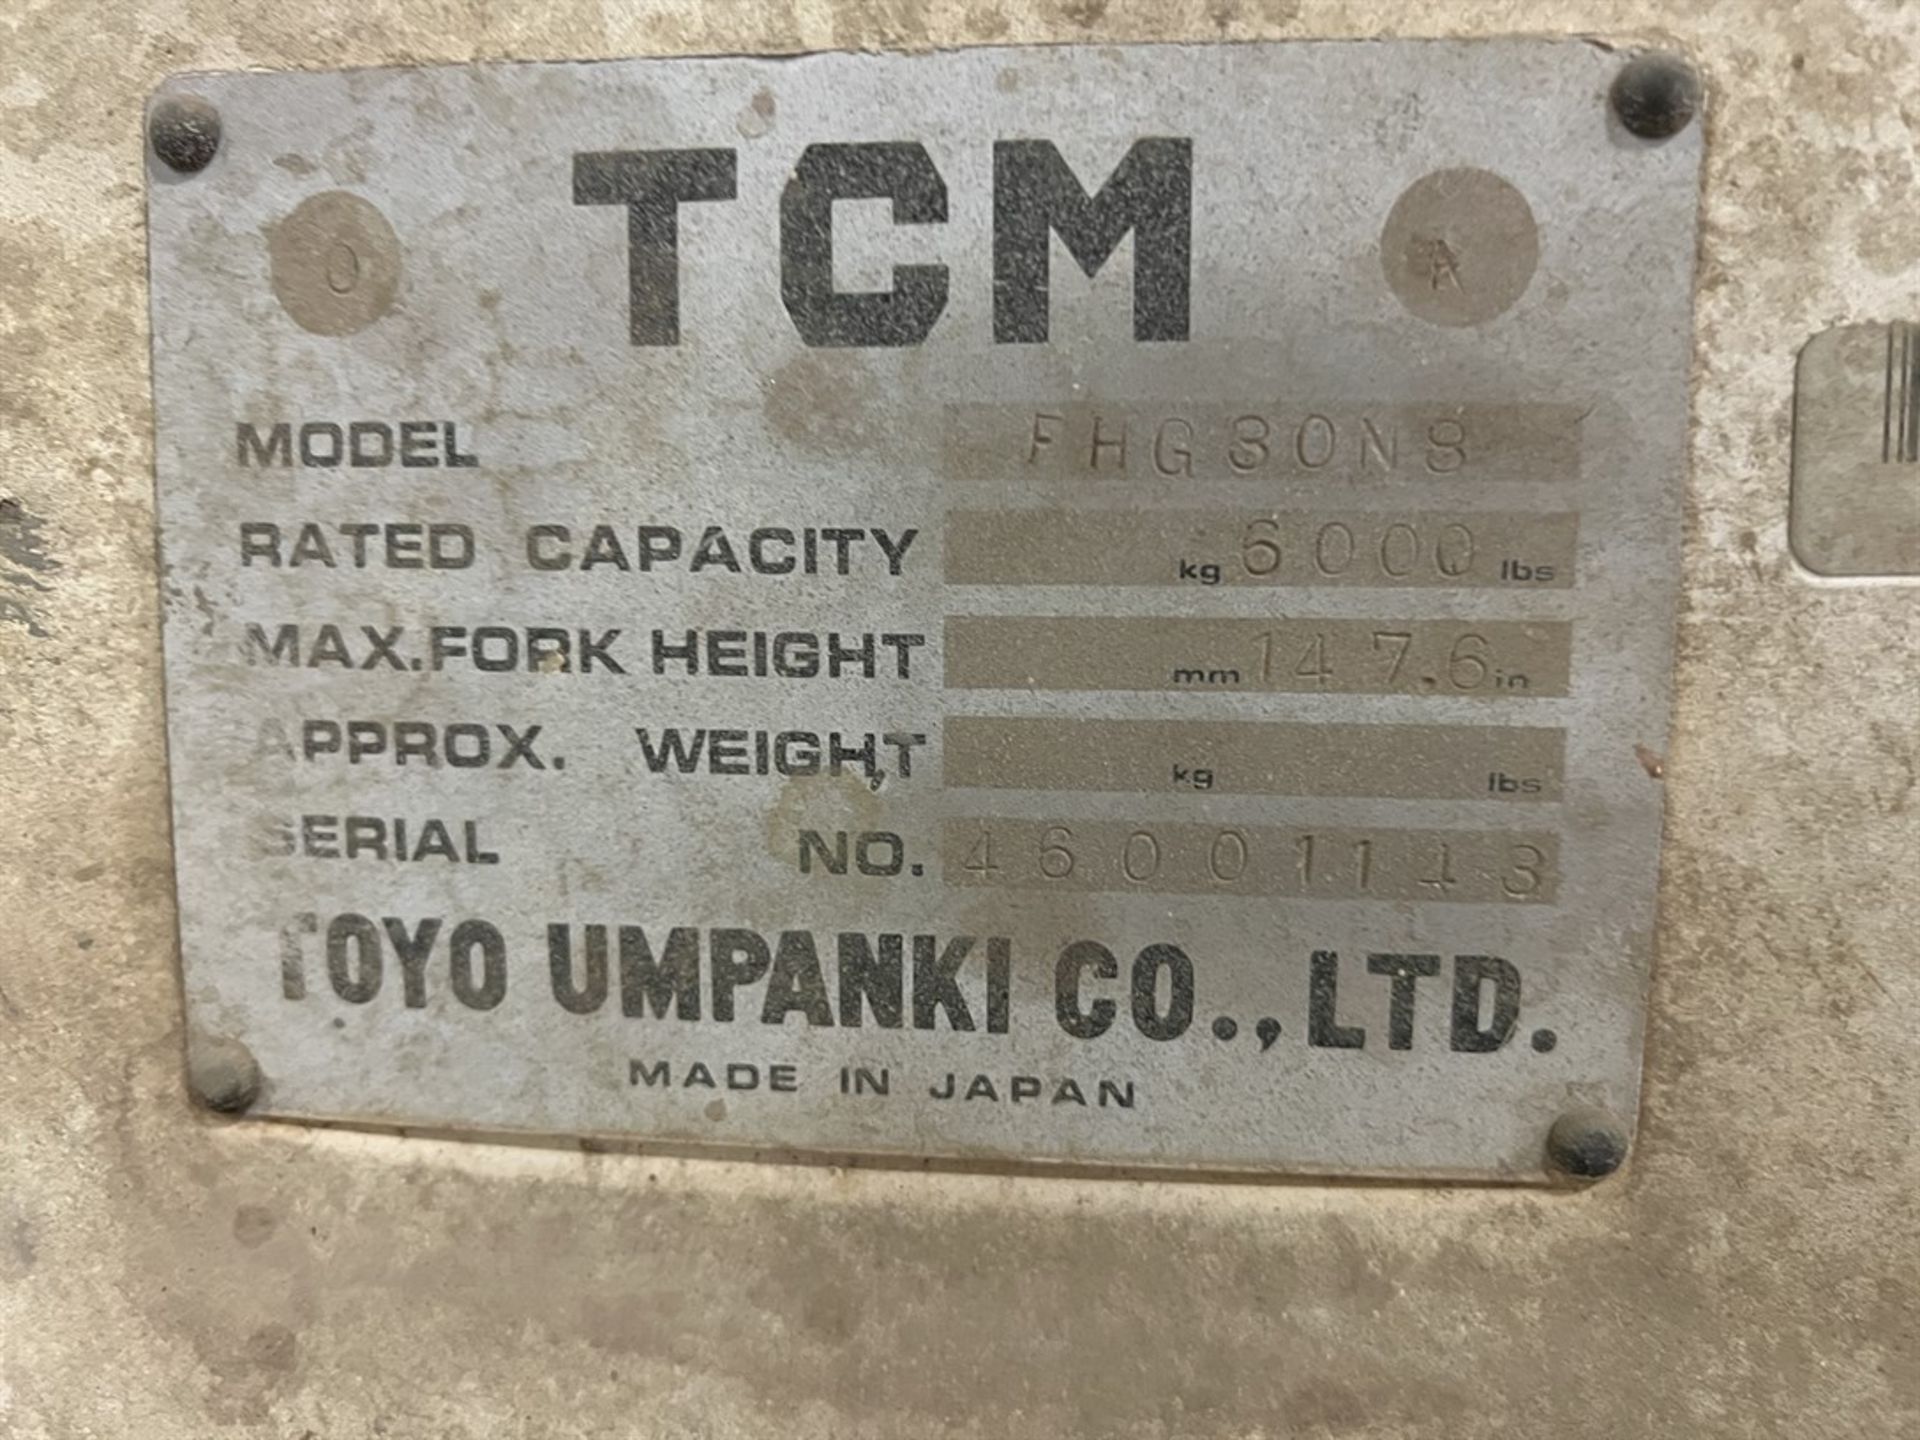 TCM FHG30N8 LP Forklift, s/n 46001143, 6000 LB Capacity, 2-Stage Mast, 5’ Fork Length - Image 9 of 9